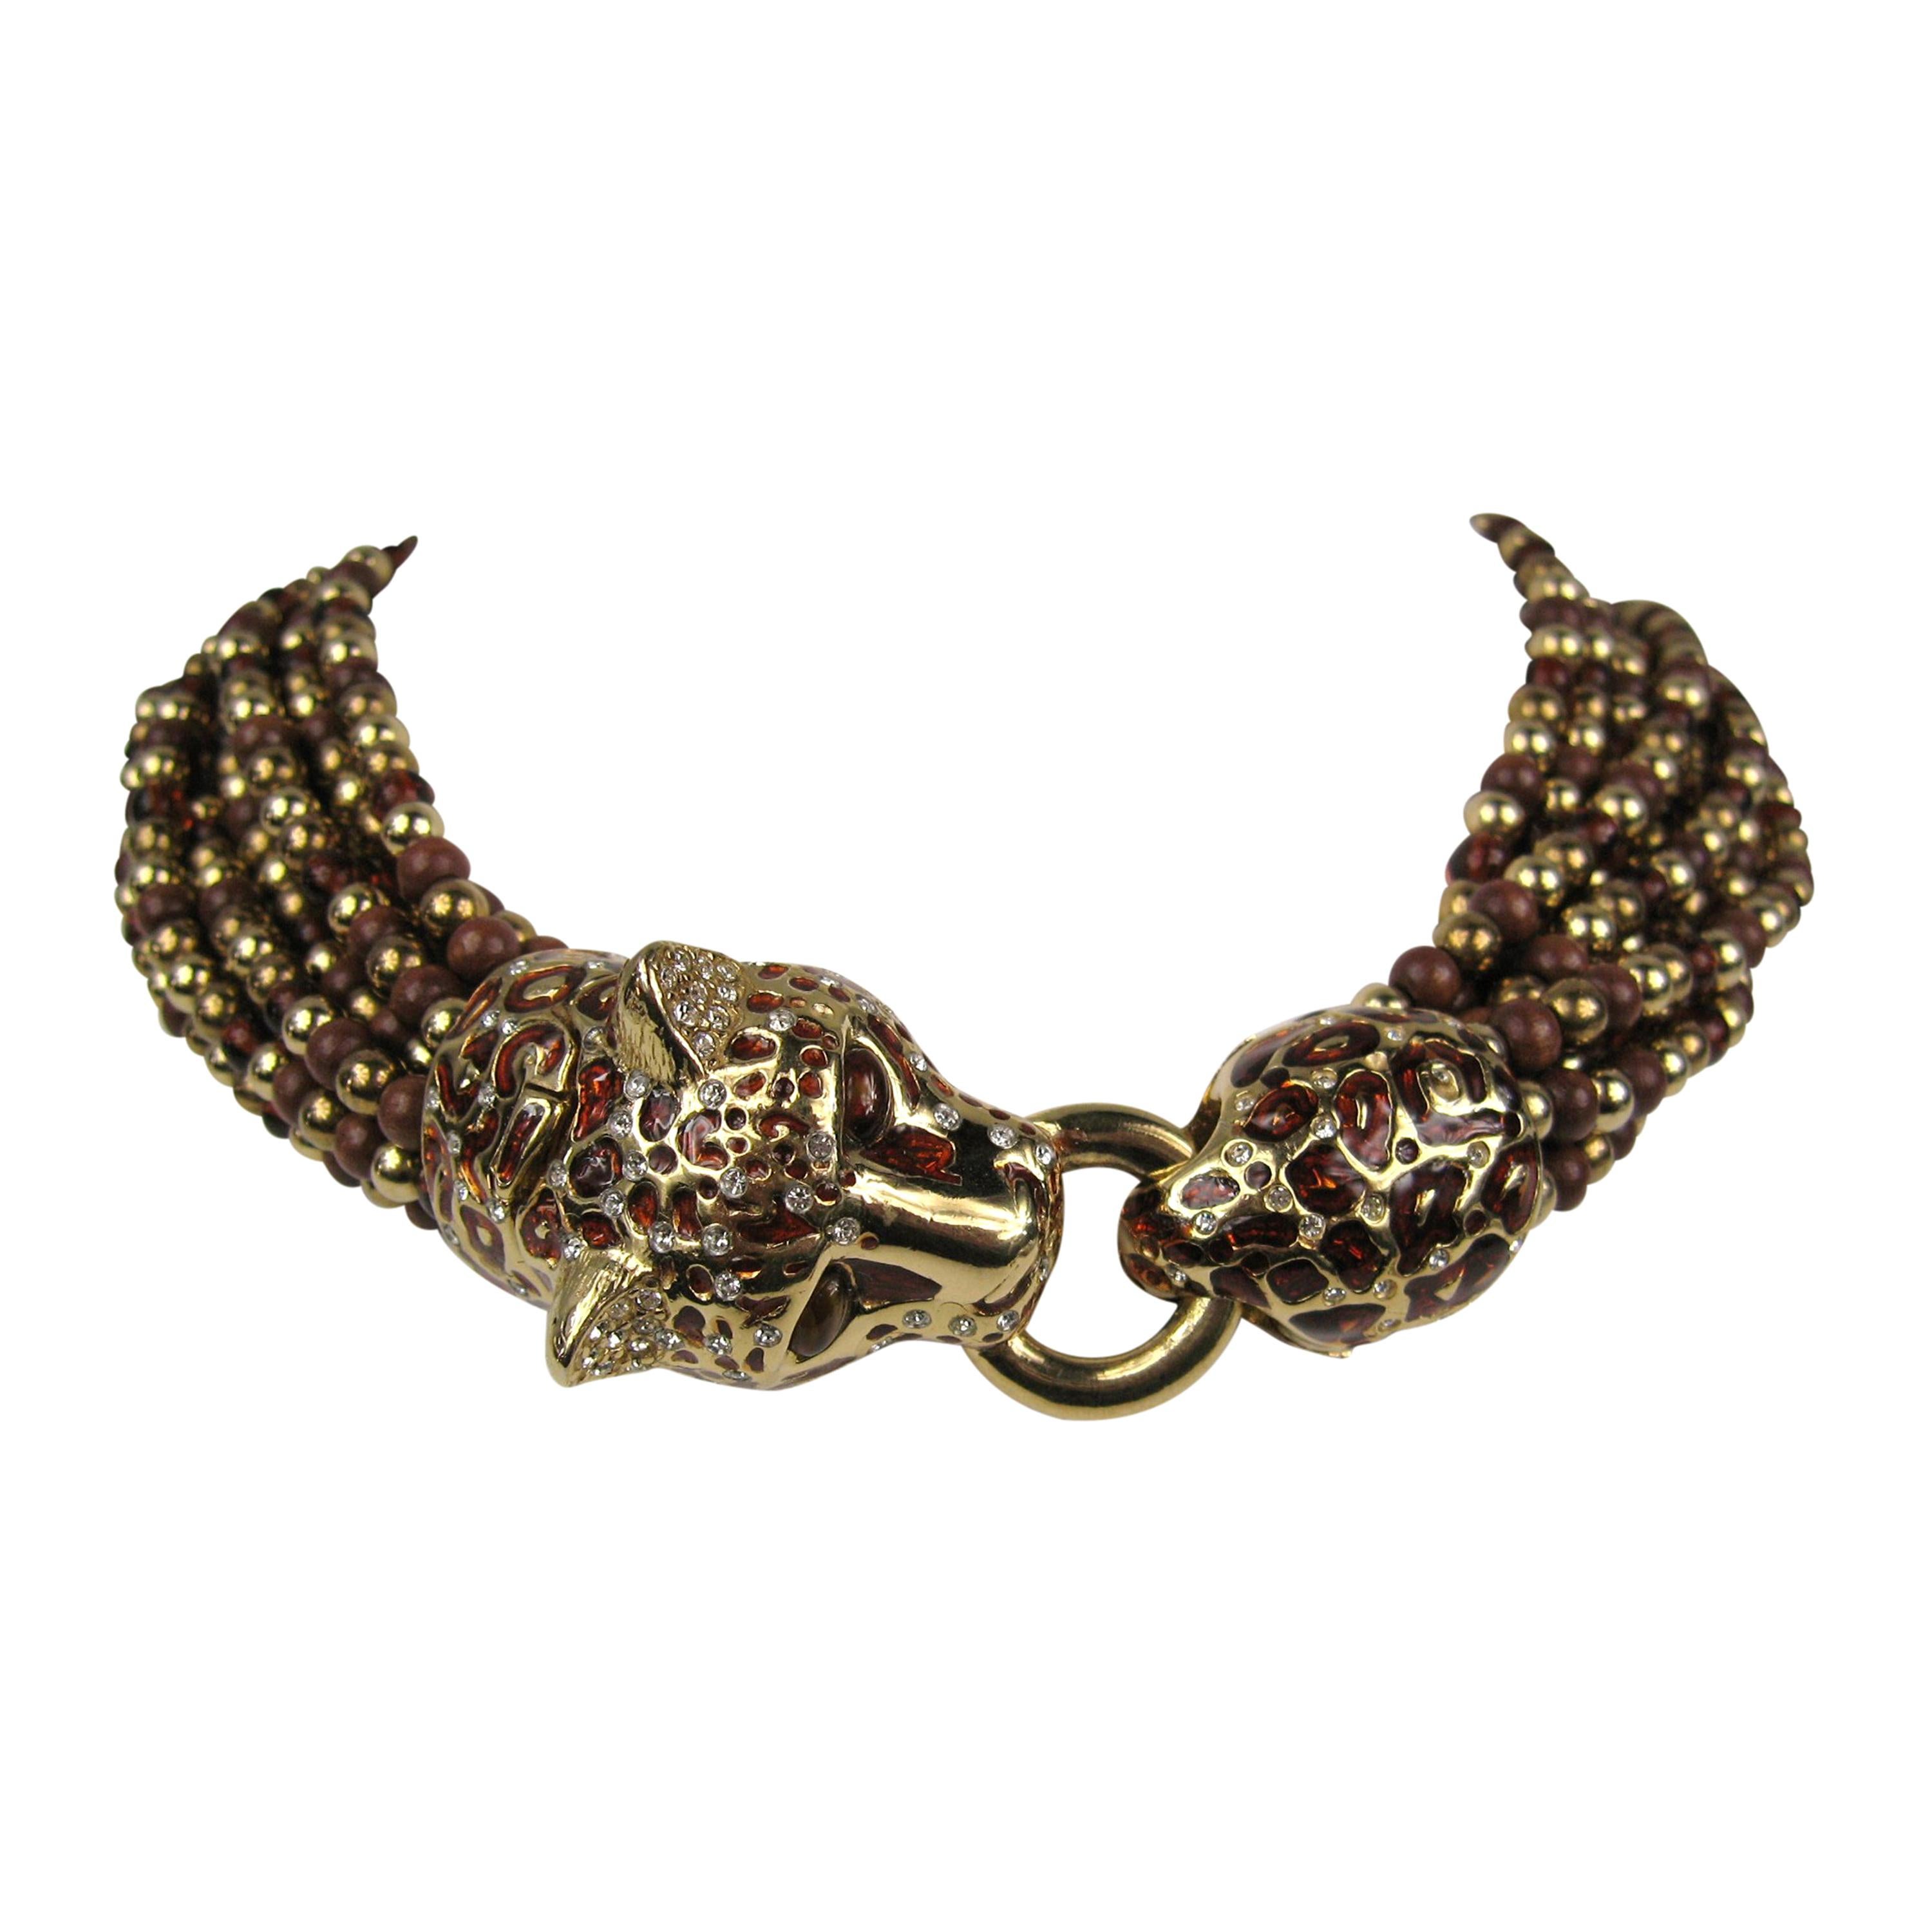  Ciner swarovski Crystal Leopard Choker Necklace New, Never Worn 1990s For Sale